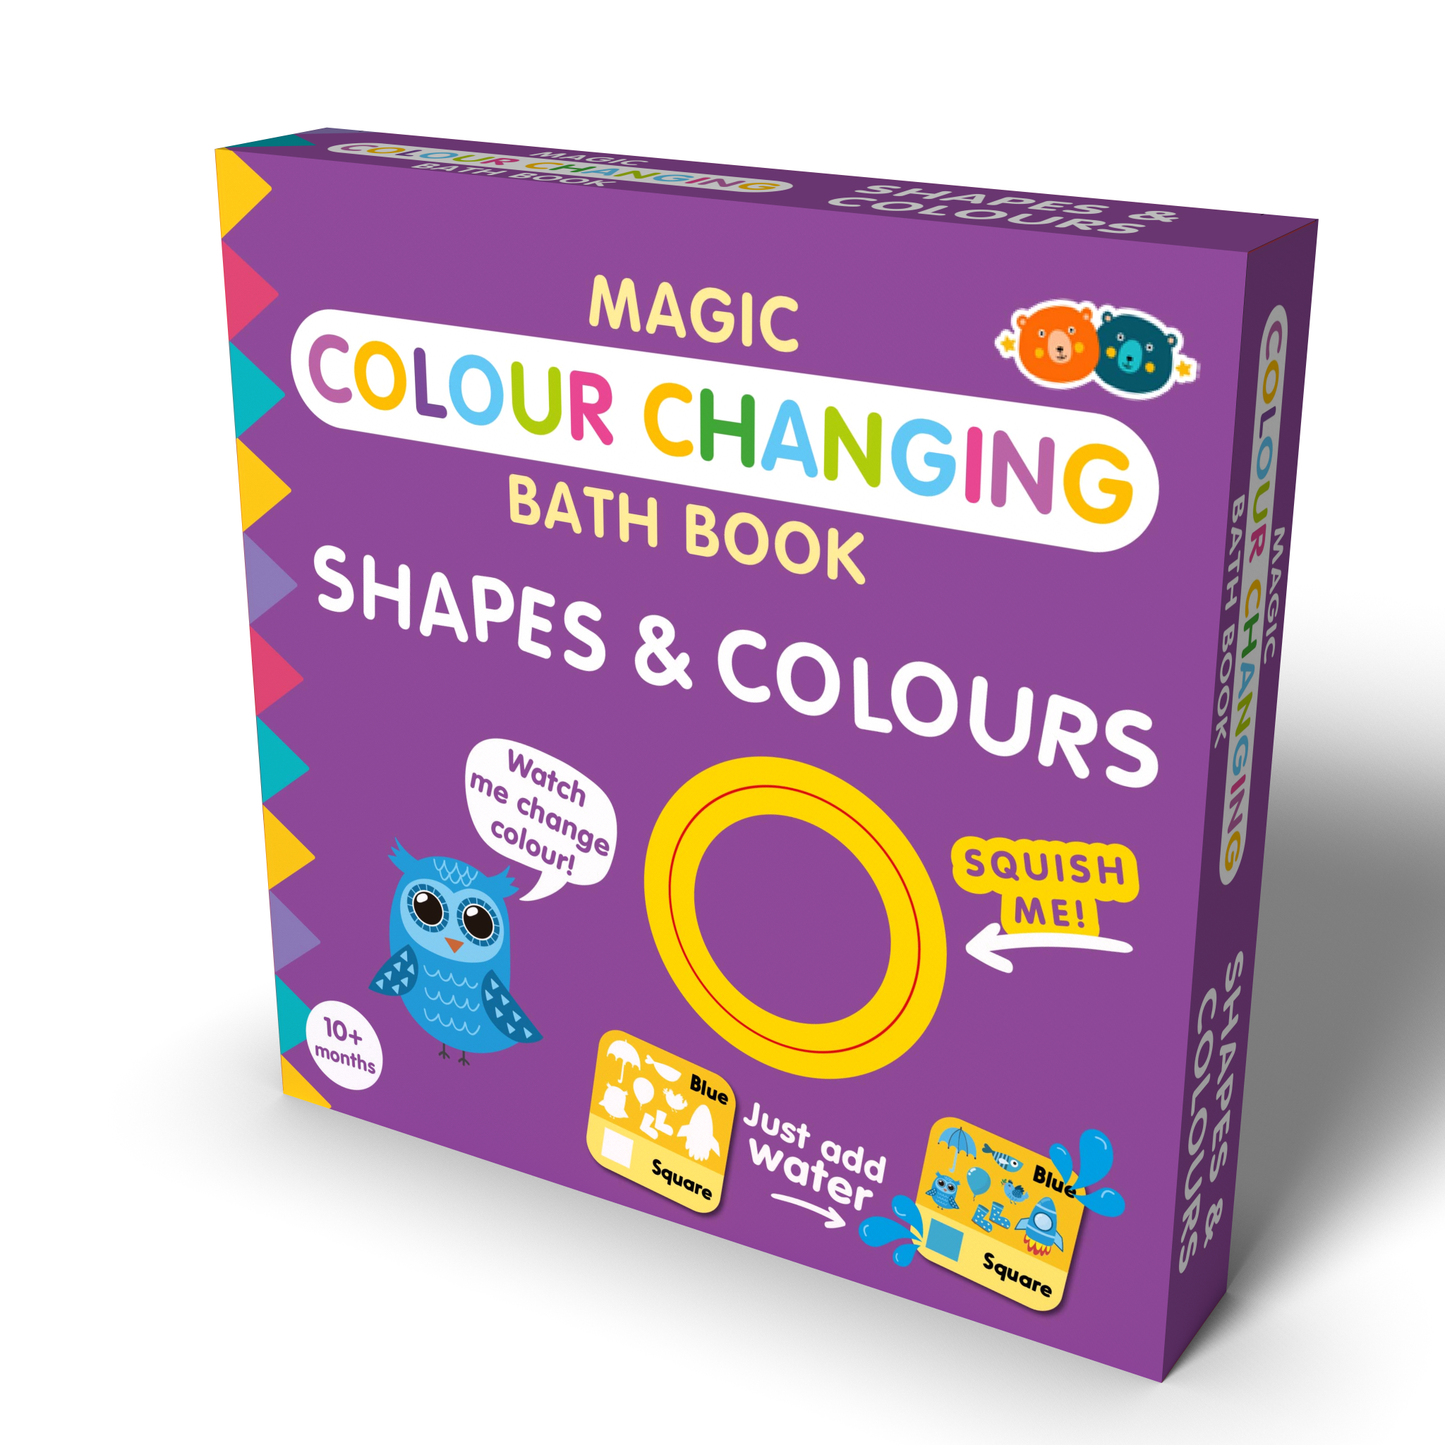 Magic Colour Changing Bath Book Shapes & Colours